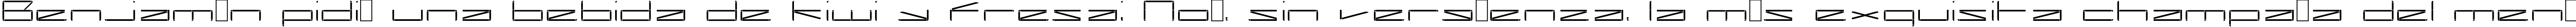 Пример написания шрифтом Capacitor regular текста на испанском